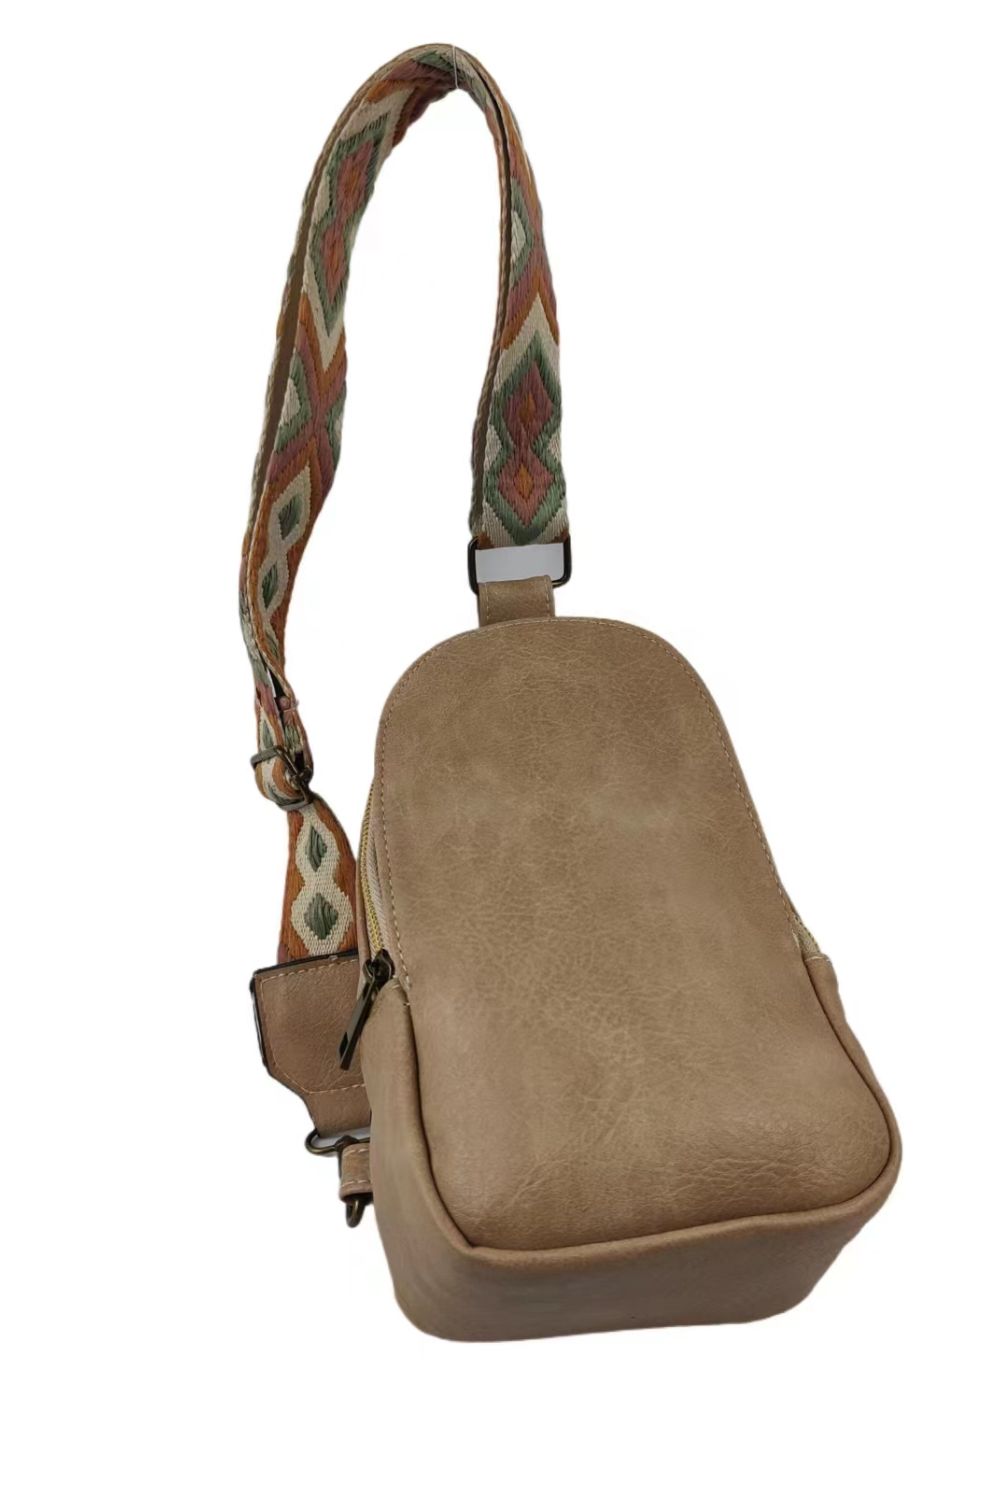 Soleil Adjustable Patterened Strap PU Leather Sling Bag